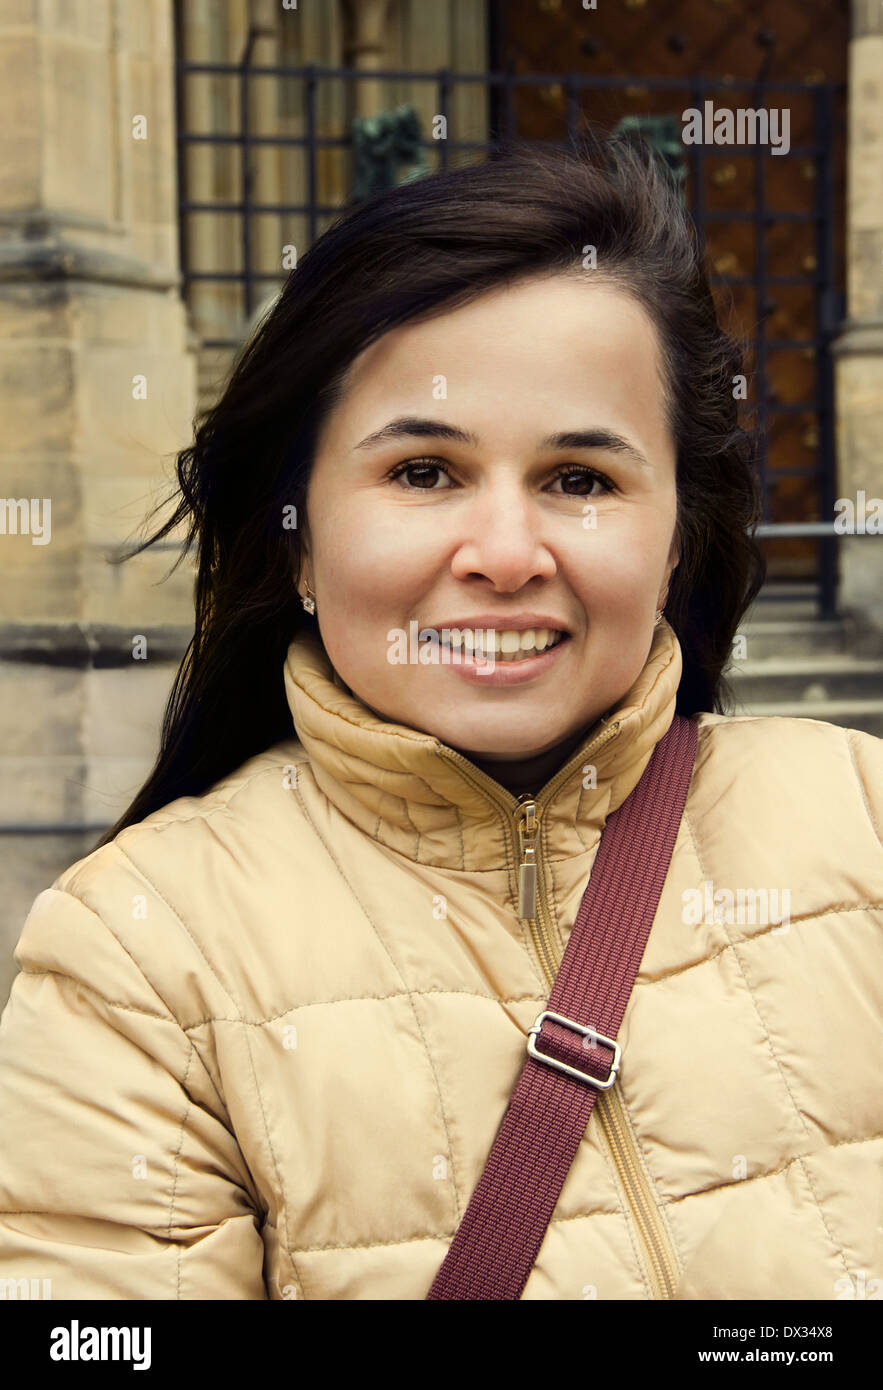 Piuttosto giovani brunette con sorriso affascinante sulla città vecchia sullo sfondo Foto Stock